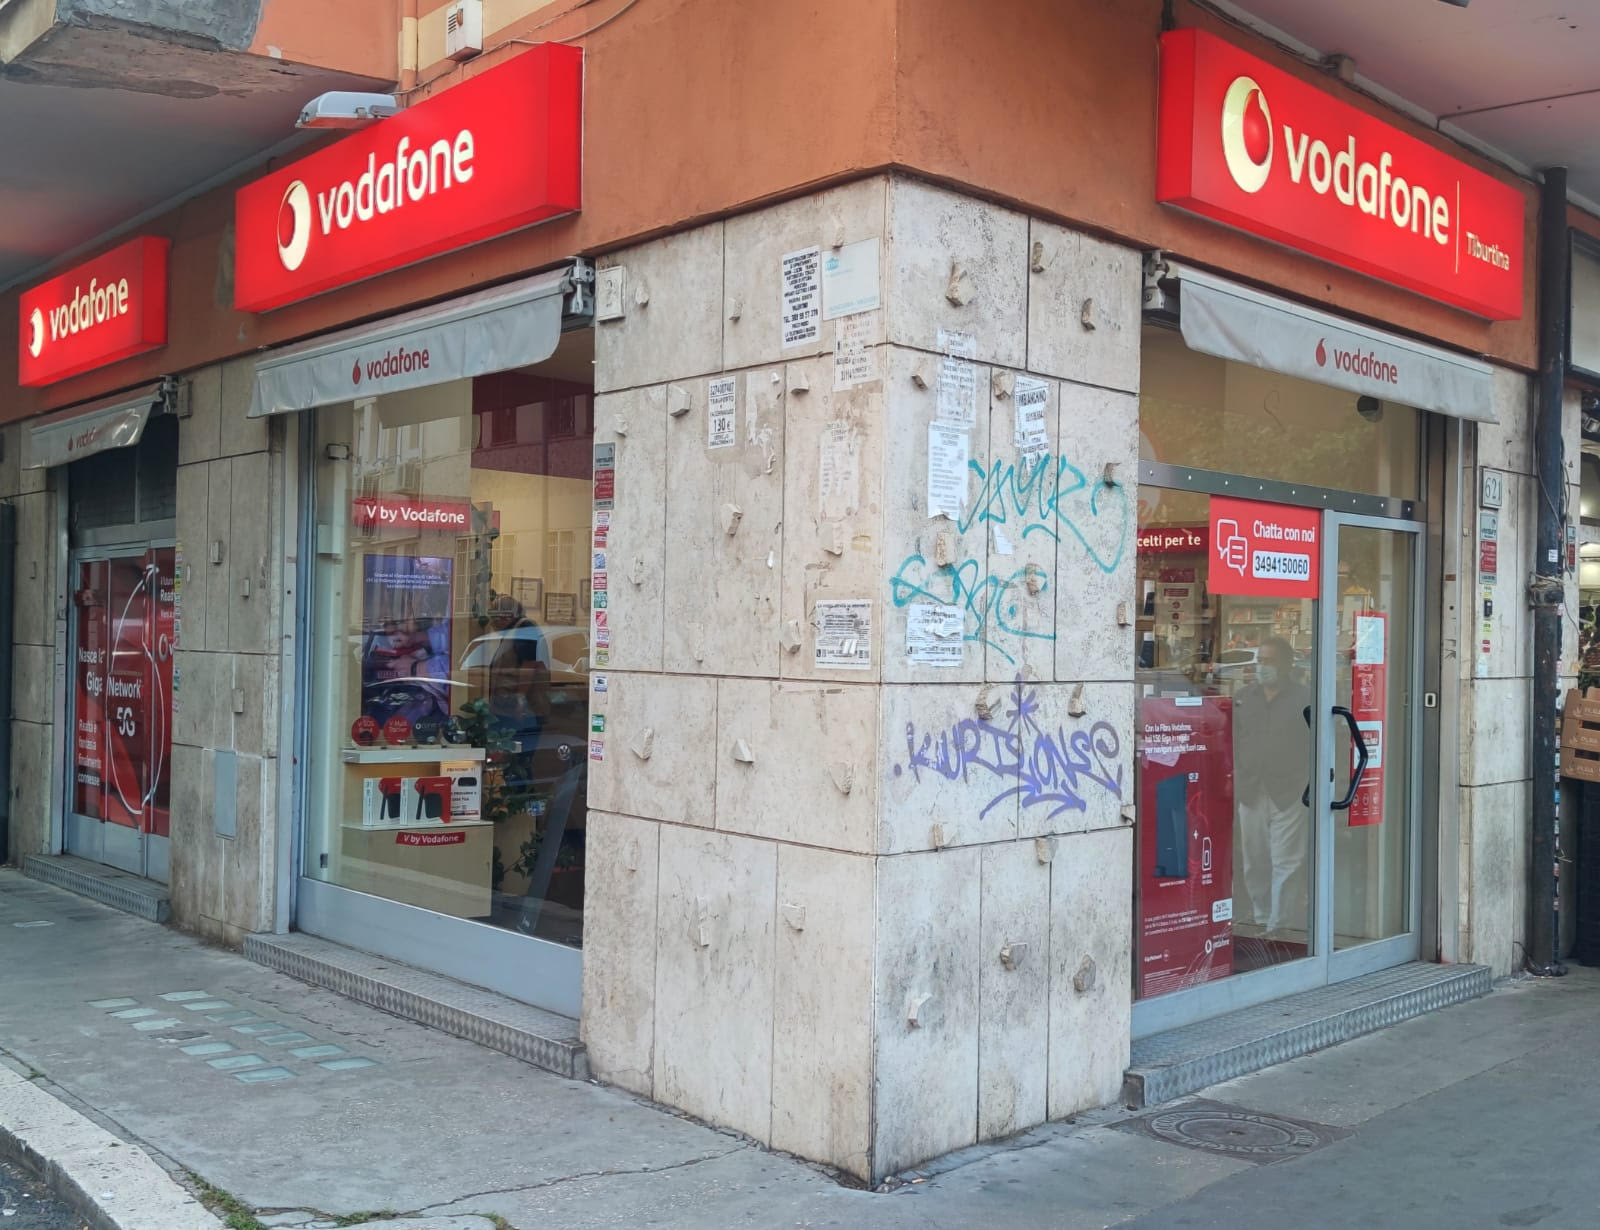 Images Vodafone Store | Tiburtina